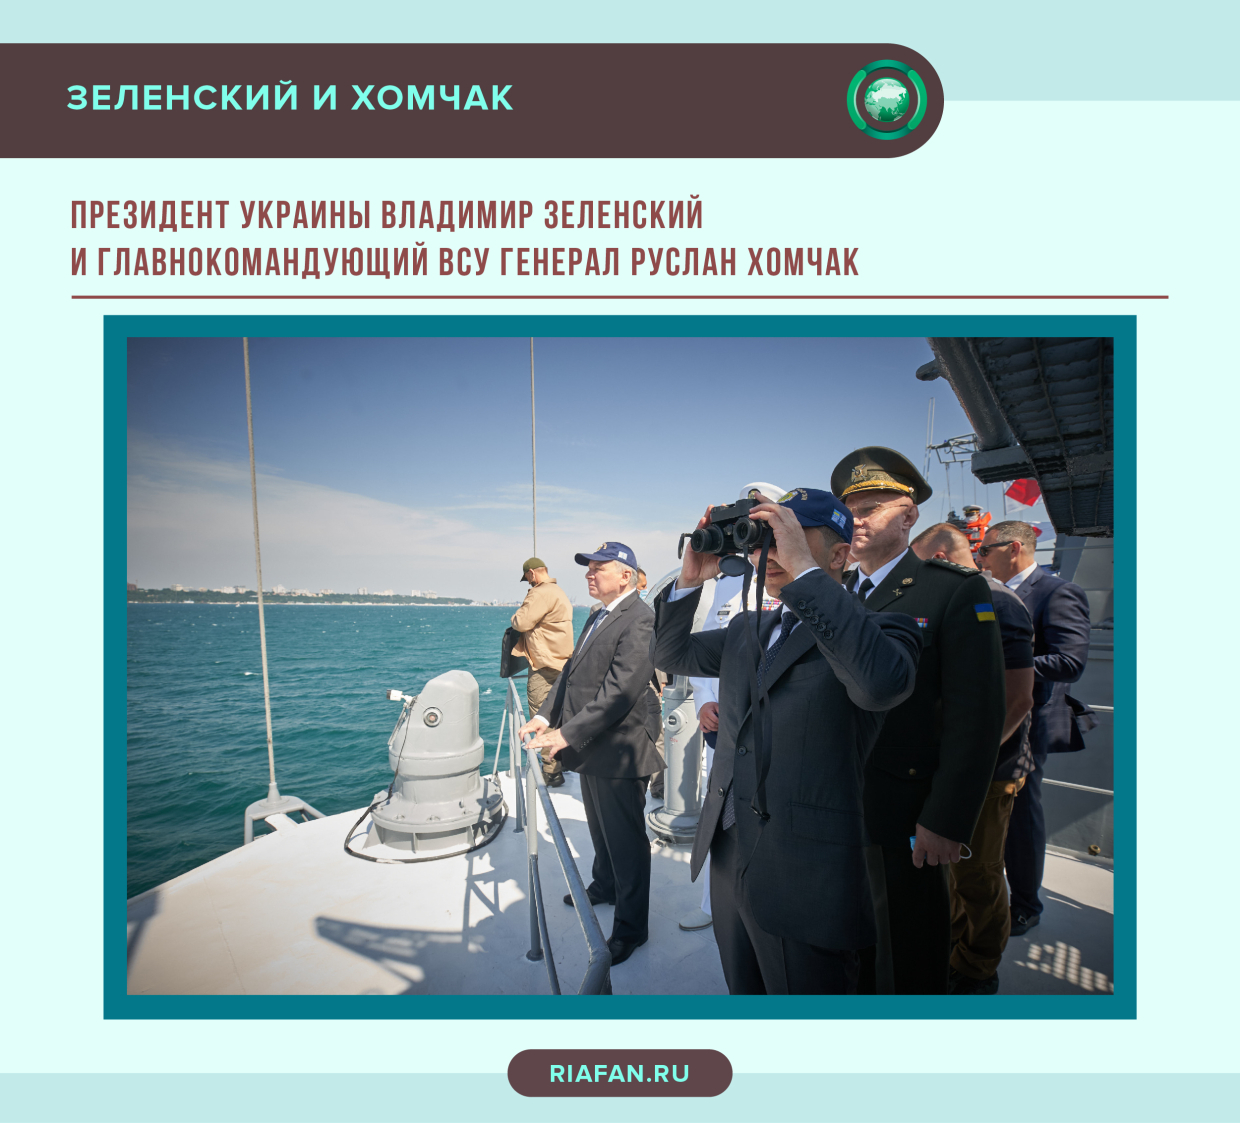 北克里米亚运河: 基辅如何想劫持半岛居民为人质